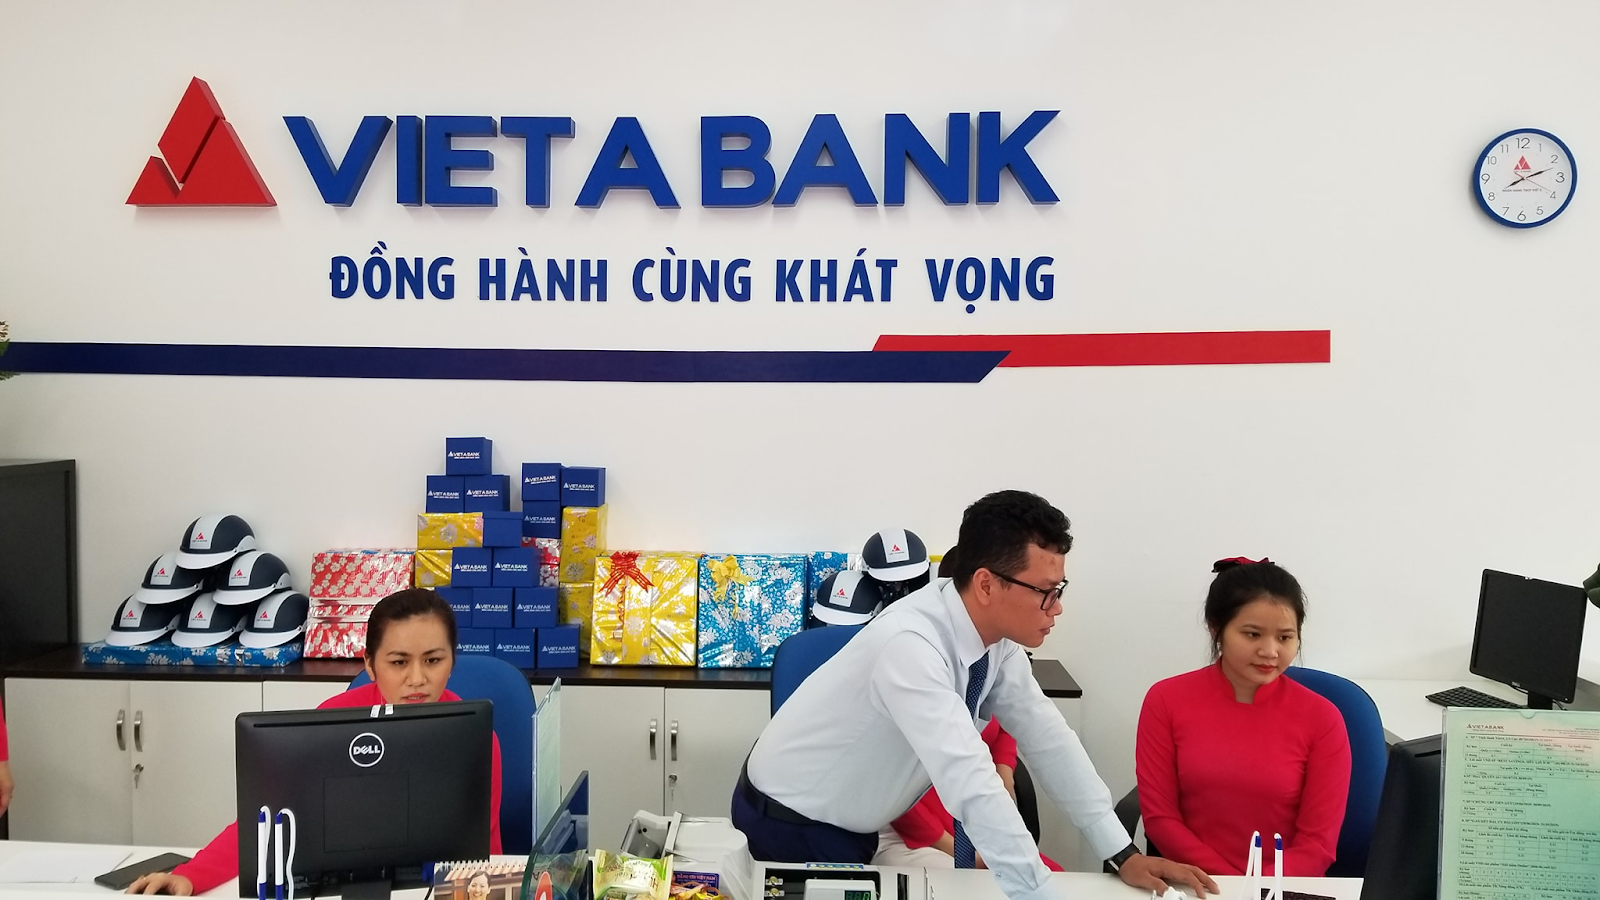 Lãi suất ngân hàng Việt Á